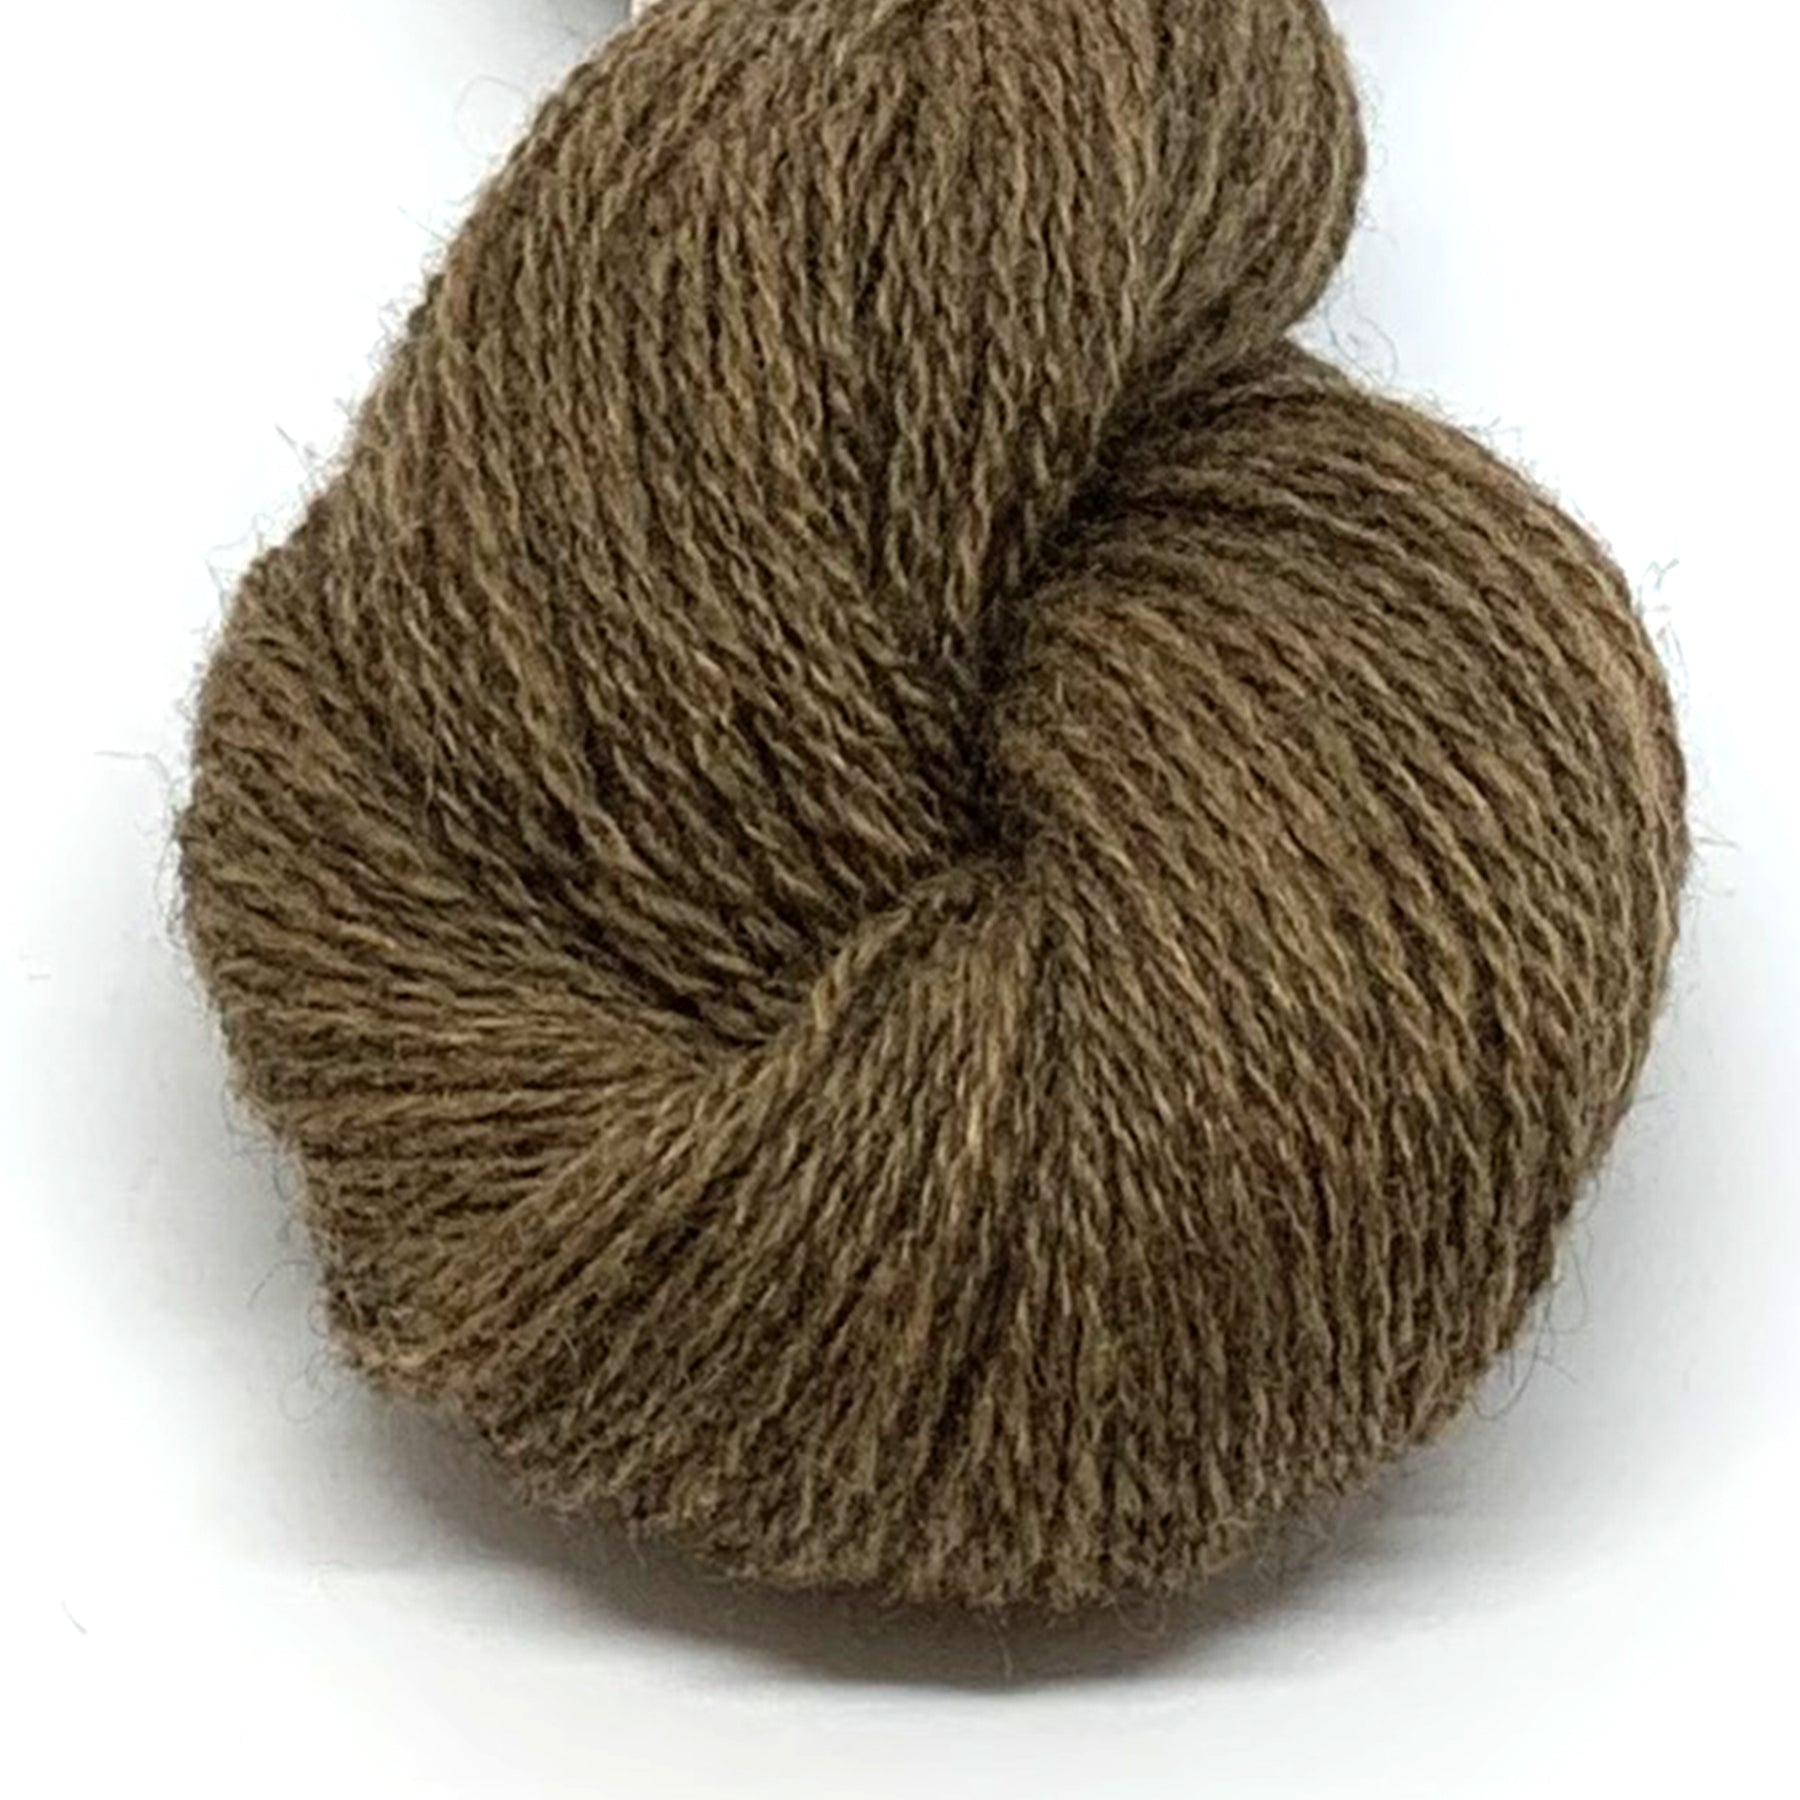 Cairn - Light brown